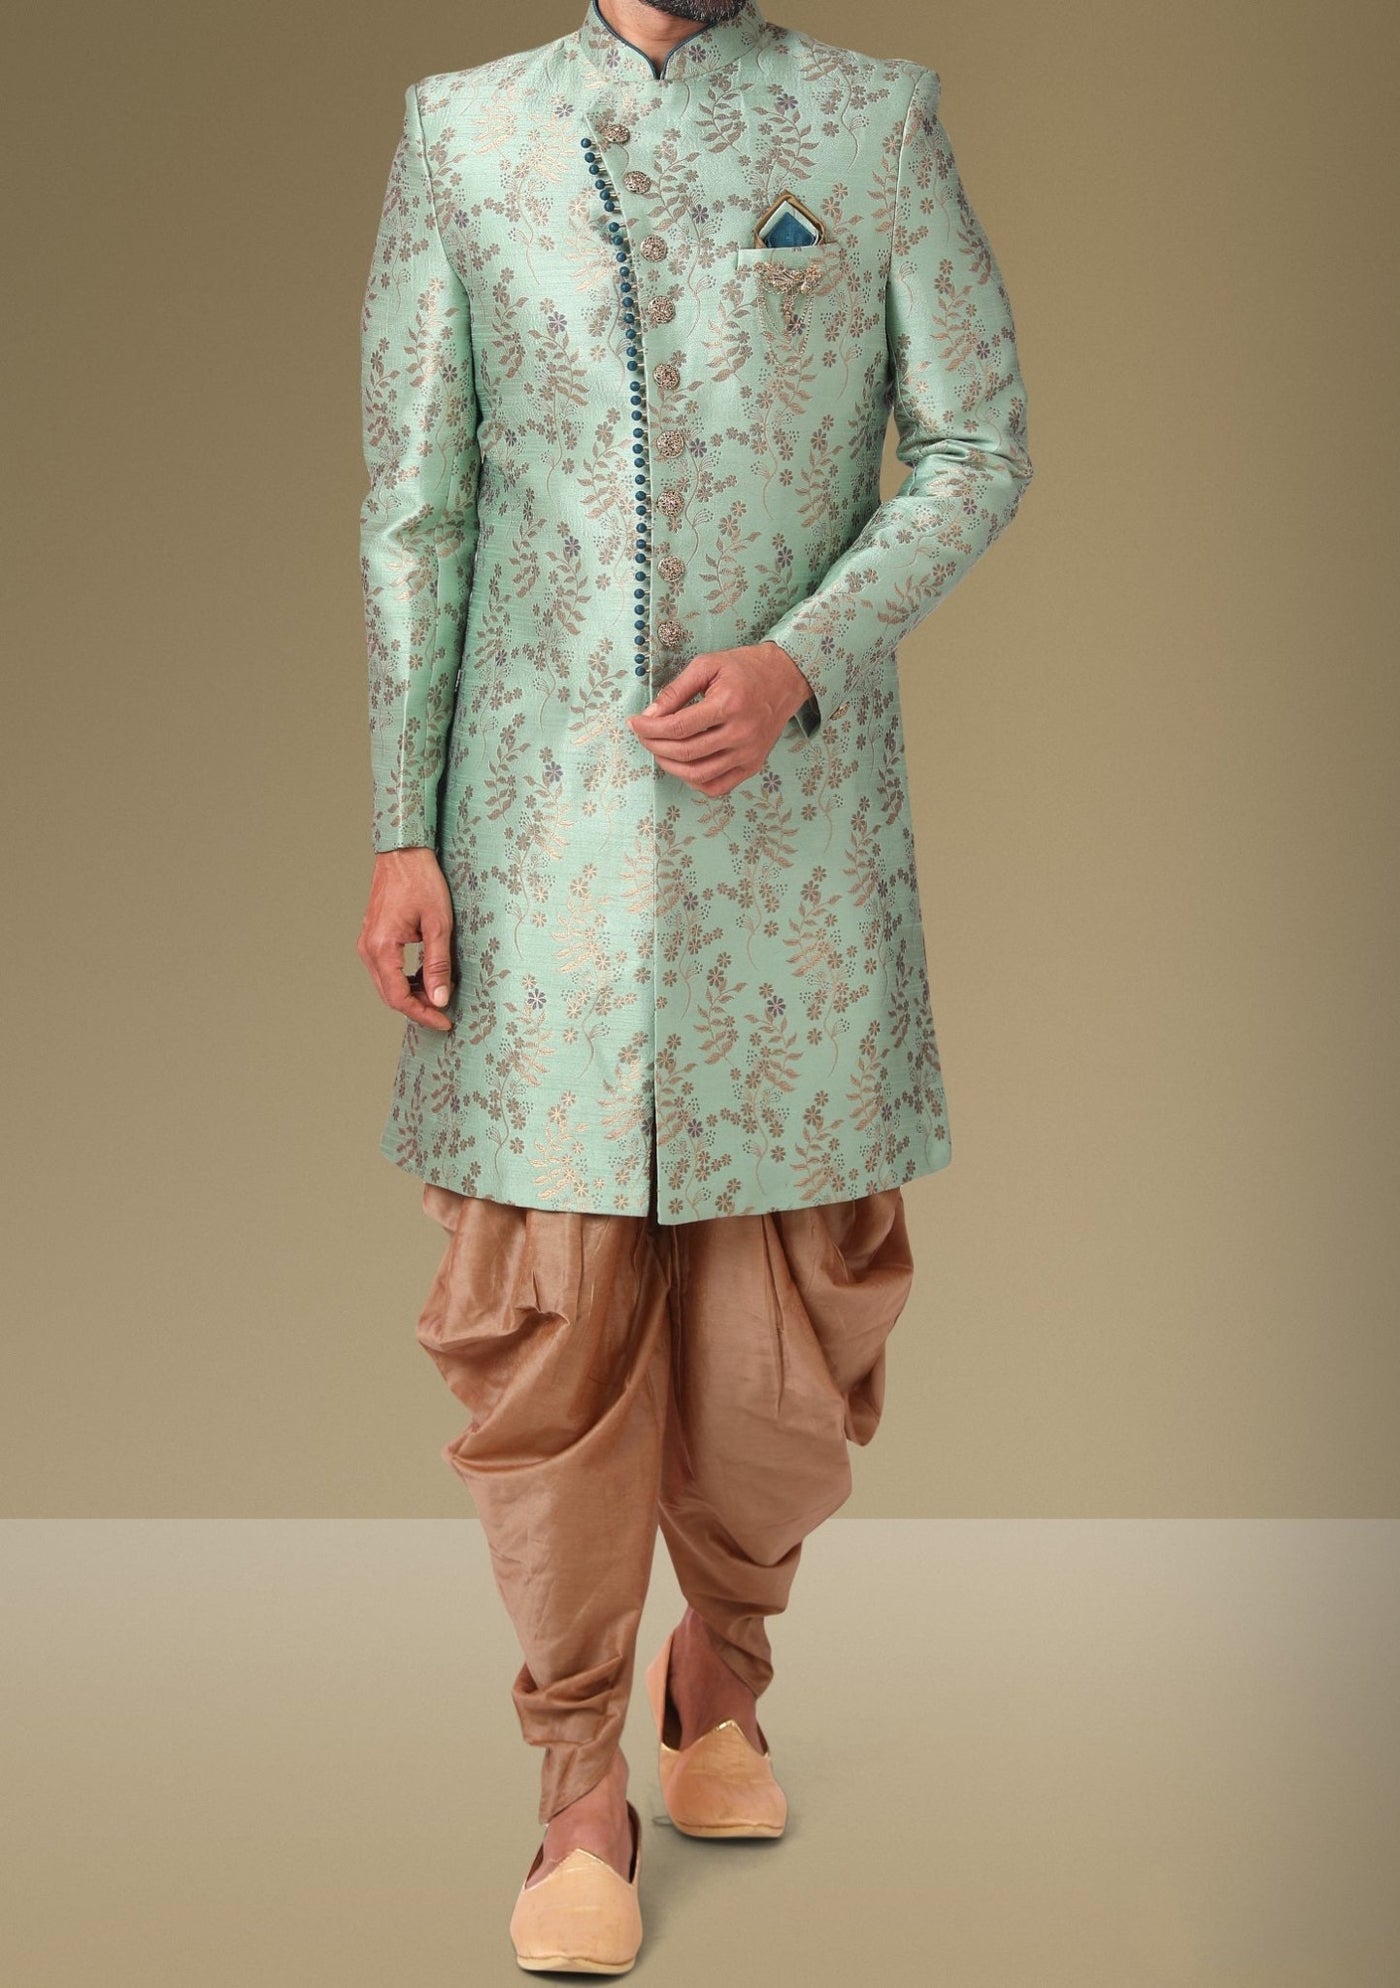 Men's Indo Western Party Wear Sherwani Suit - db18075